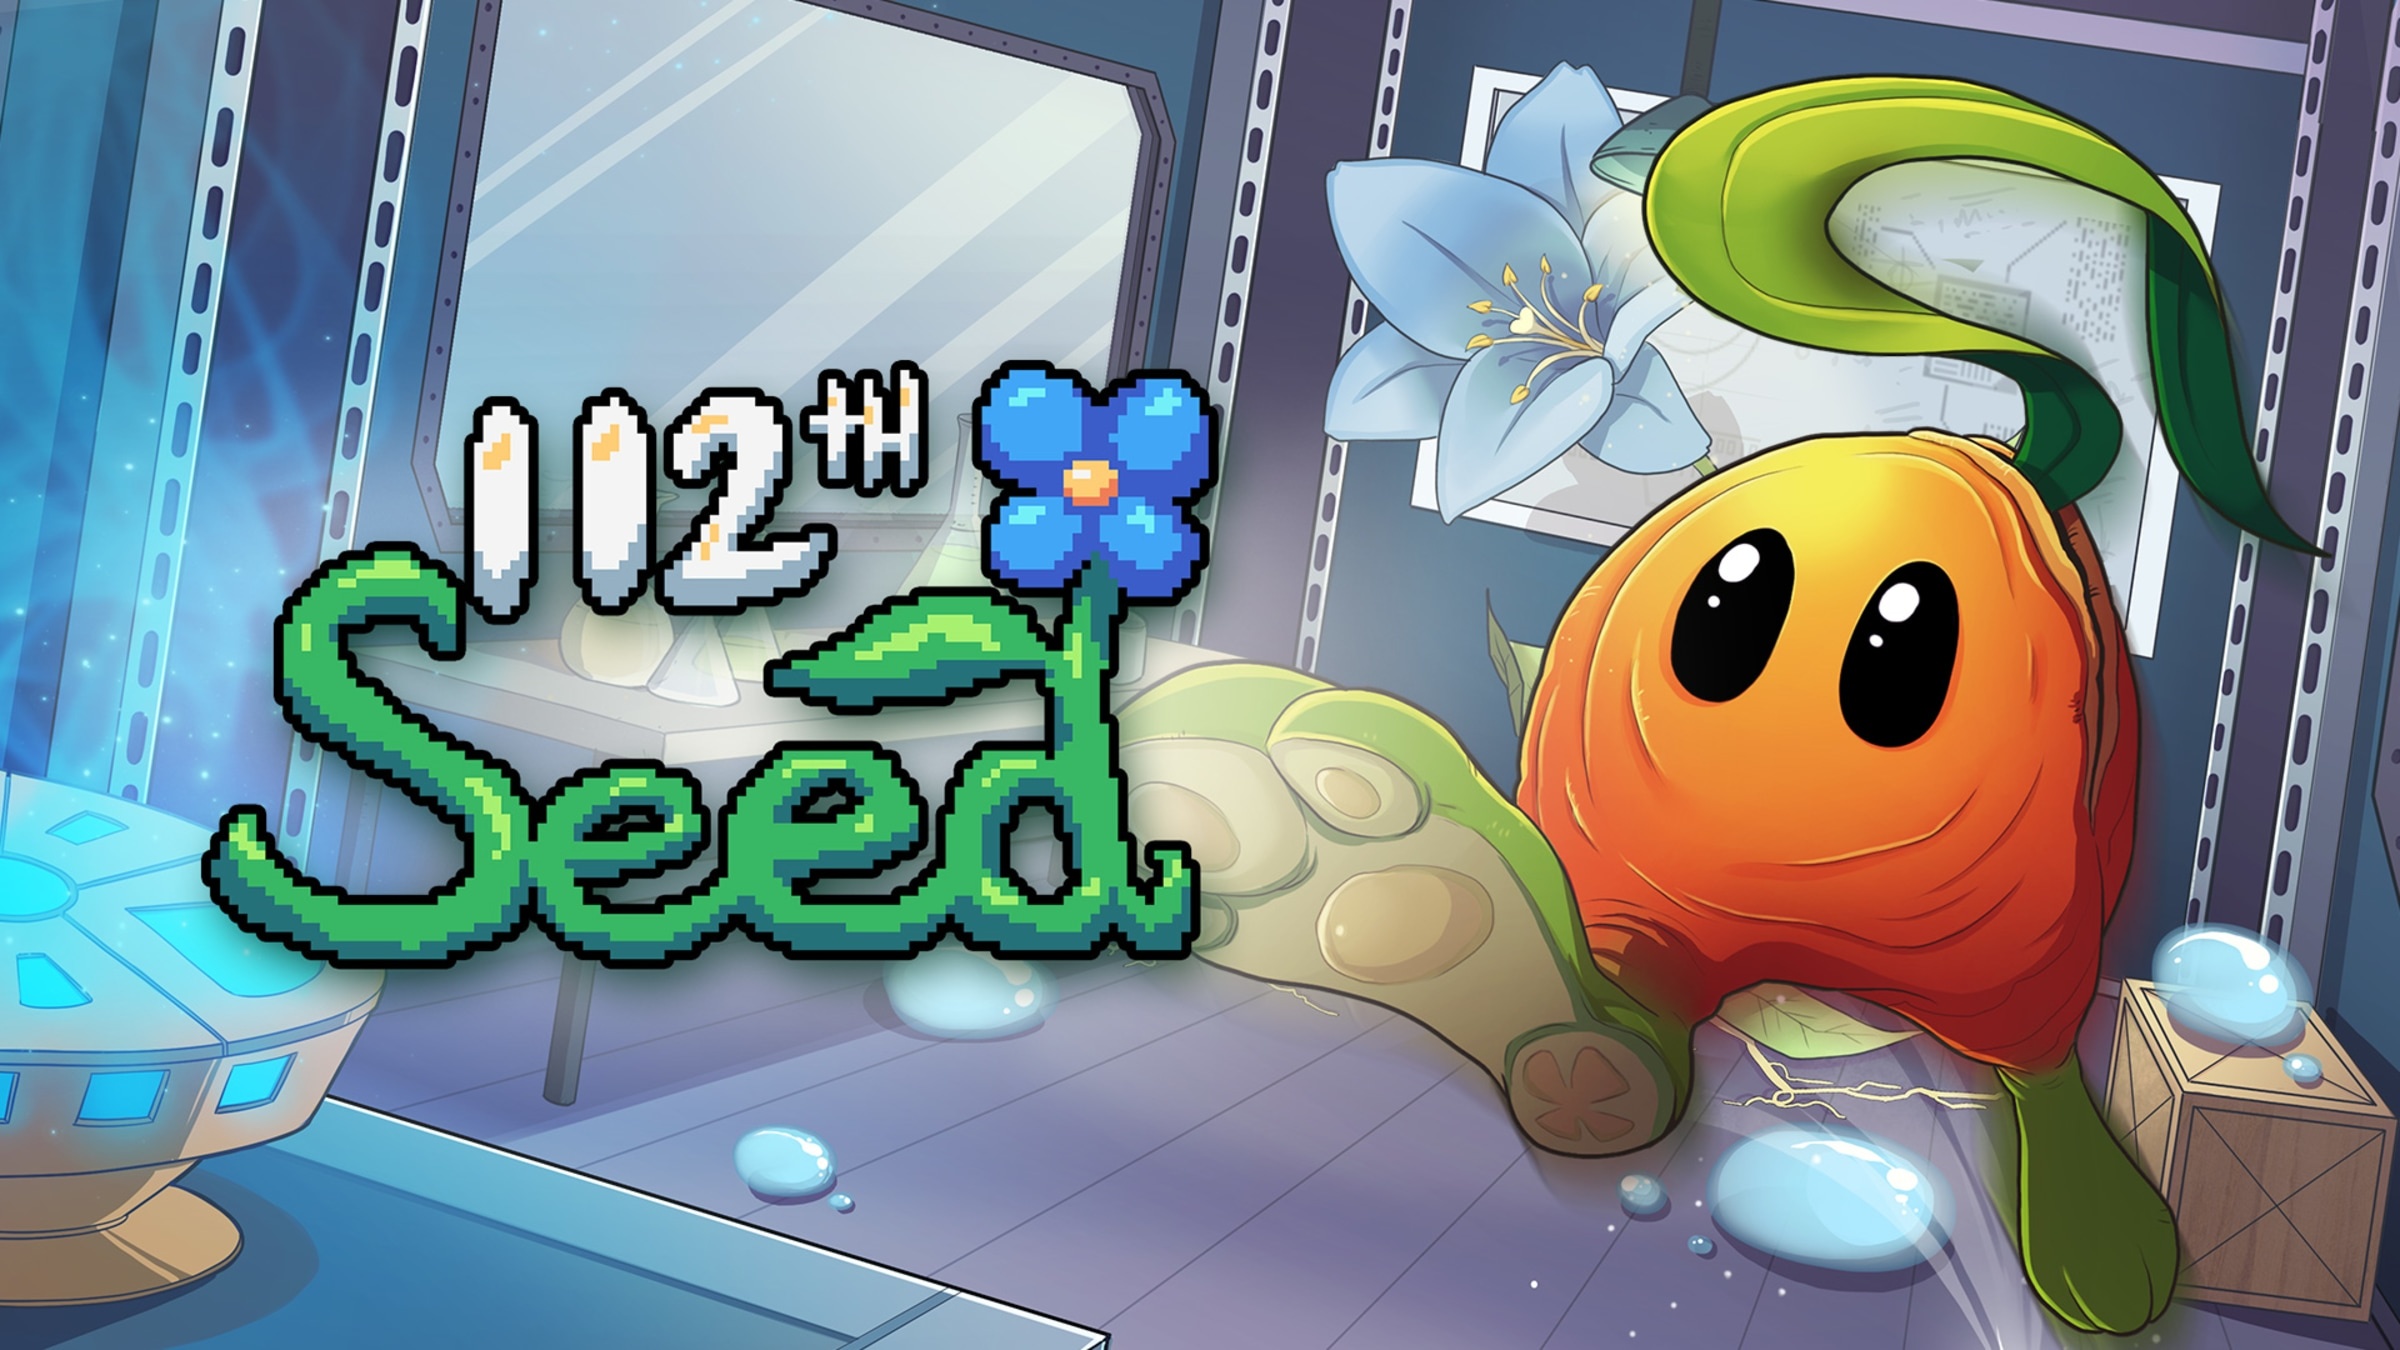 Game 112th Seed - Game giải đố chủ đề môi trường độc đáo